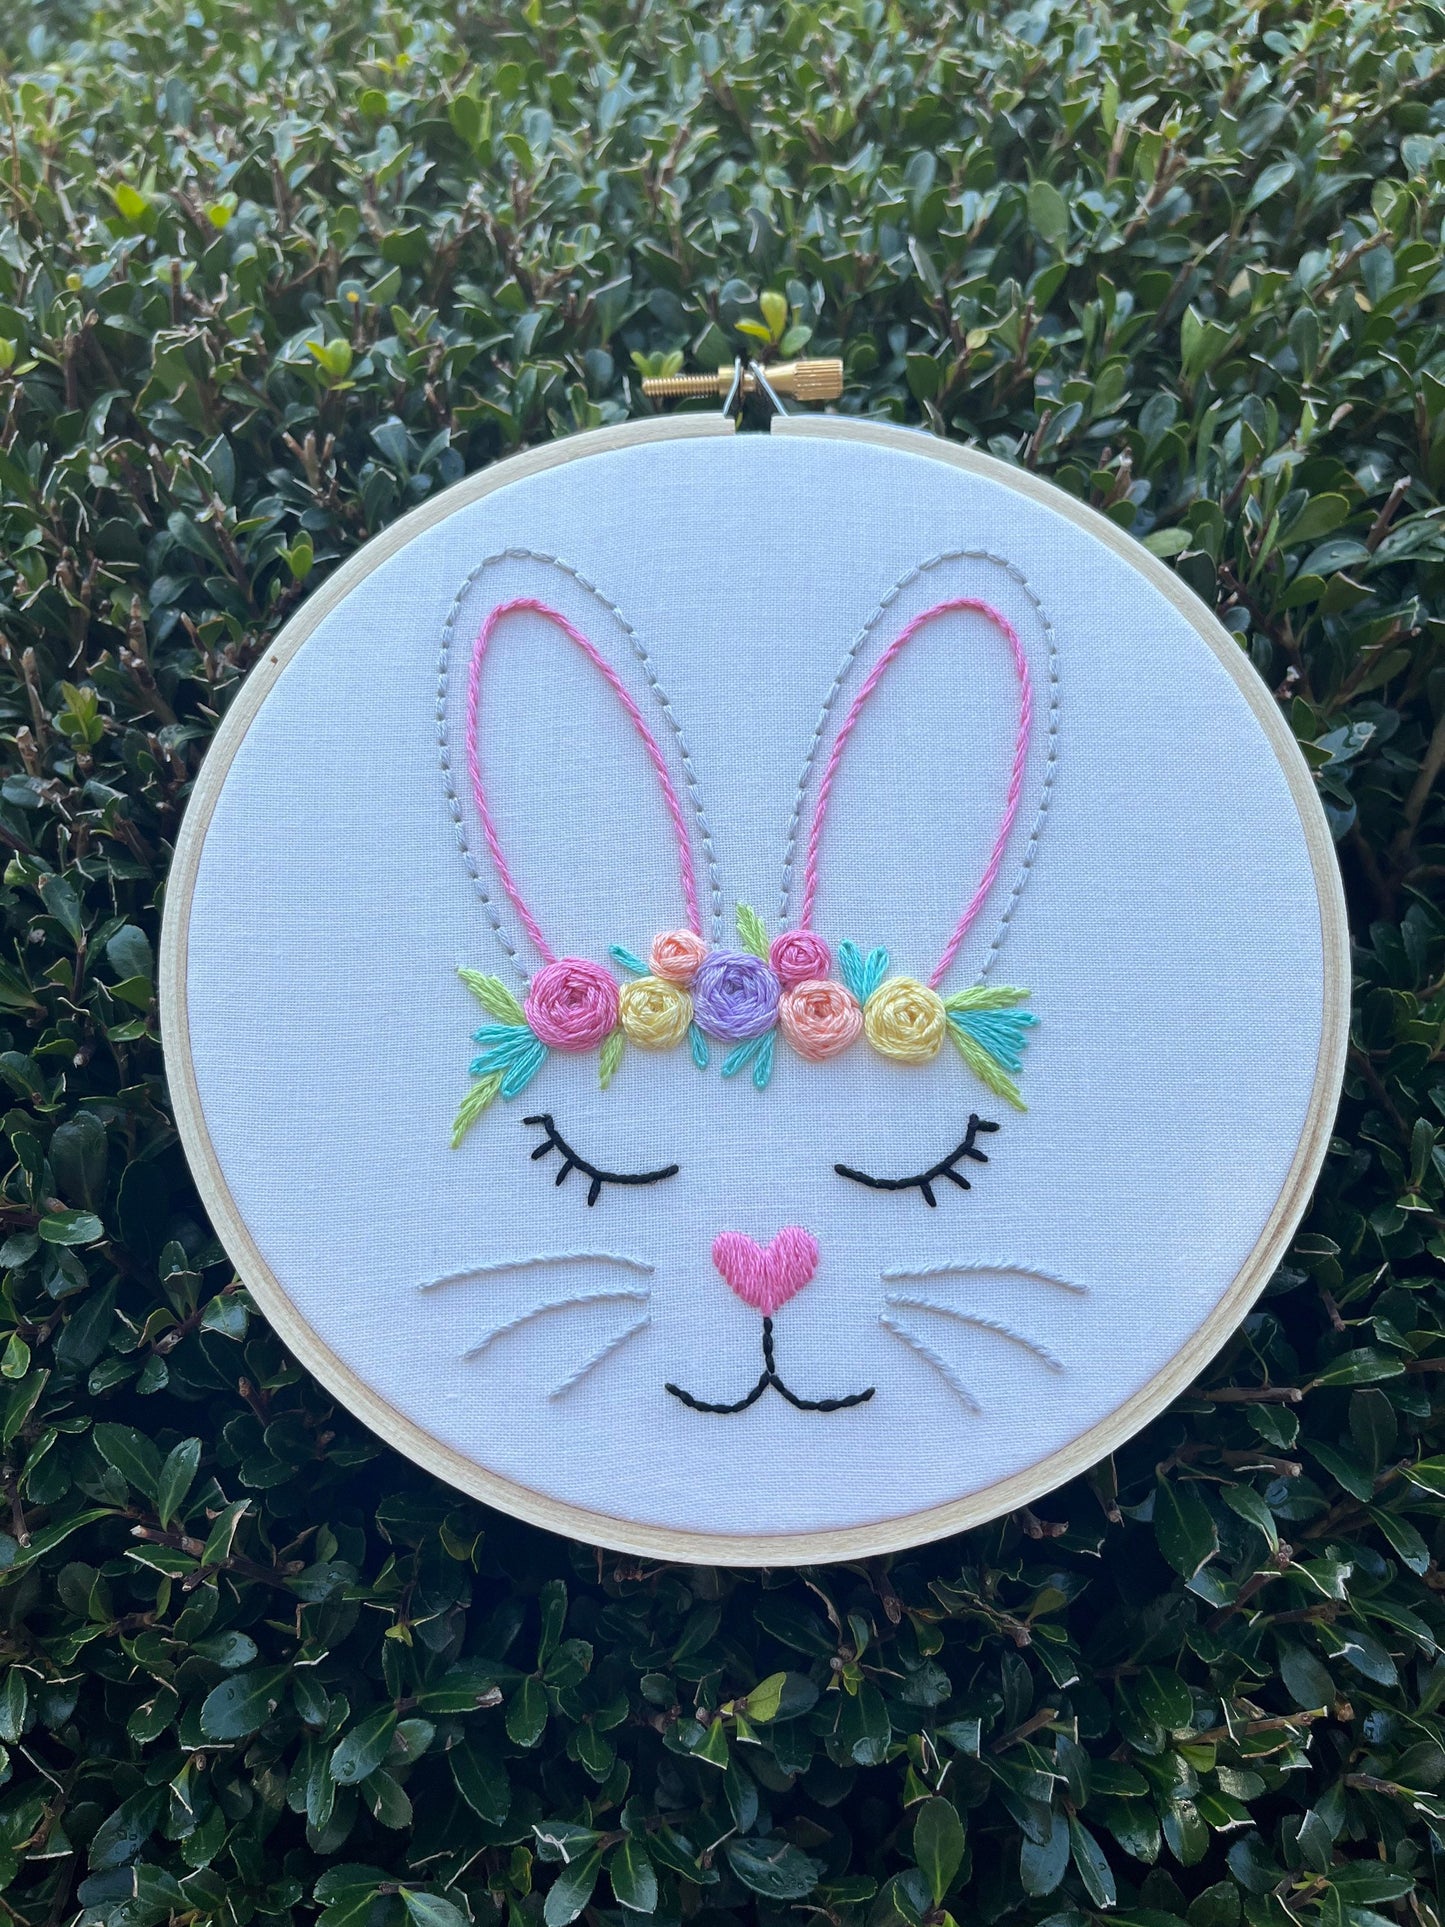 6” Flower Crown Bunny - Handmade Embroidery Hoop